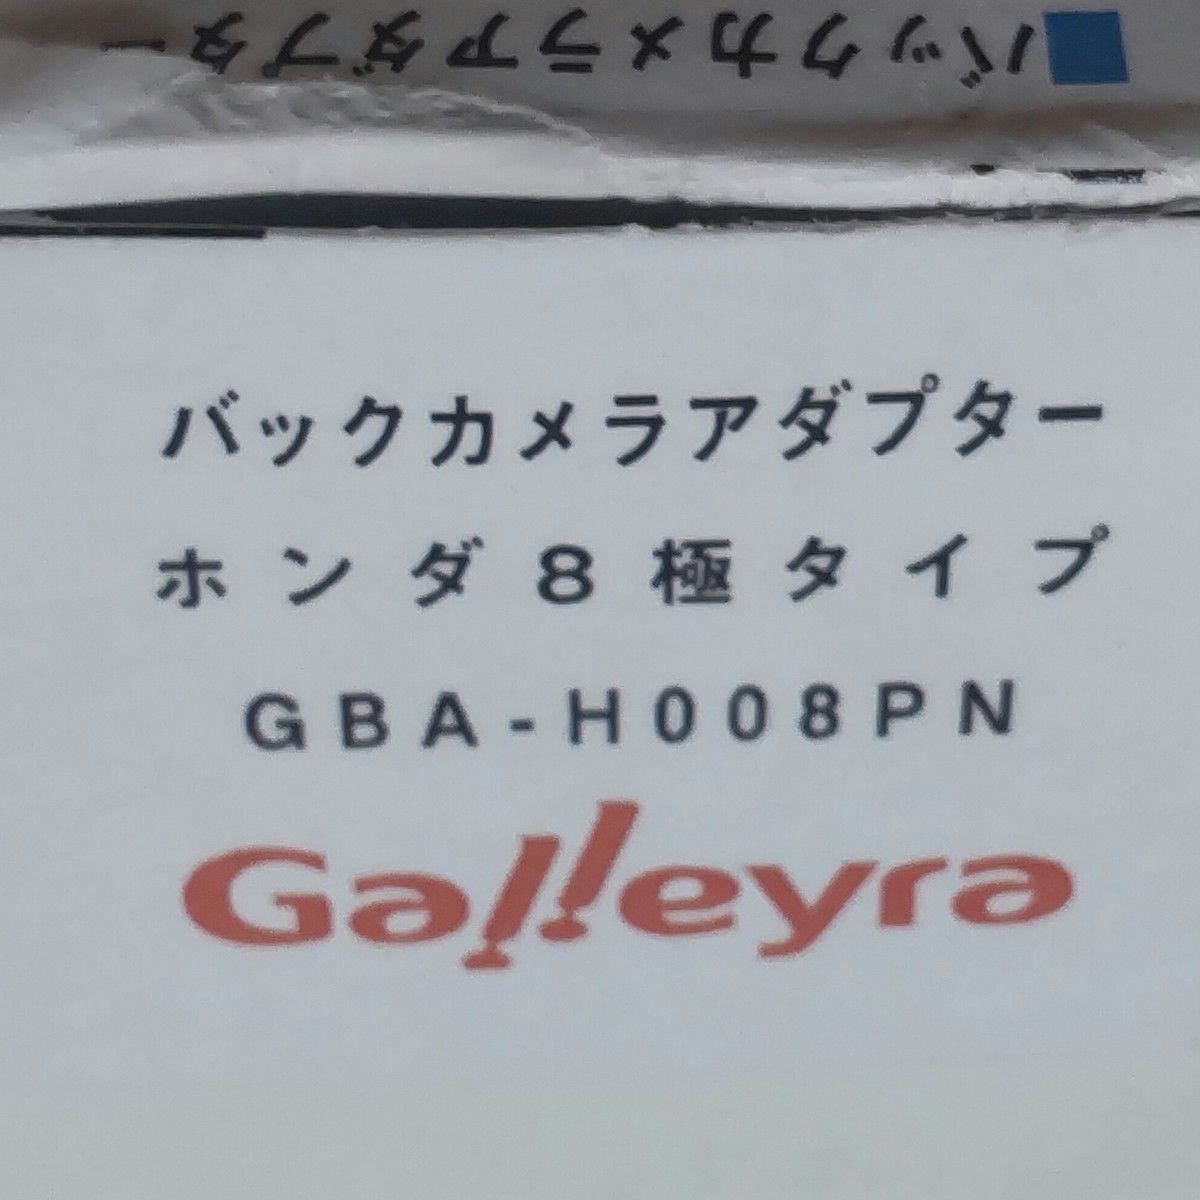 Galleyra ガレイラ GBA-H008PN バックカメラアダプタホンダ8Pカプラタイプ(ノーマルビュー固定) 